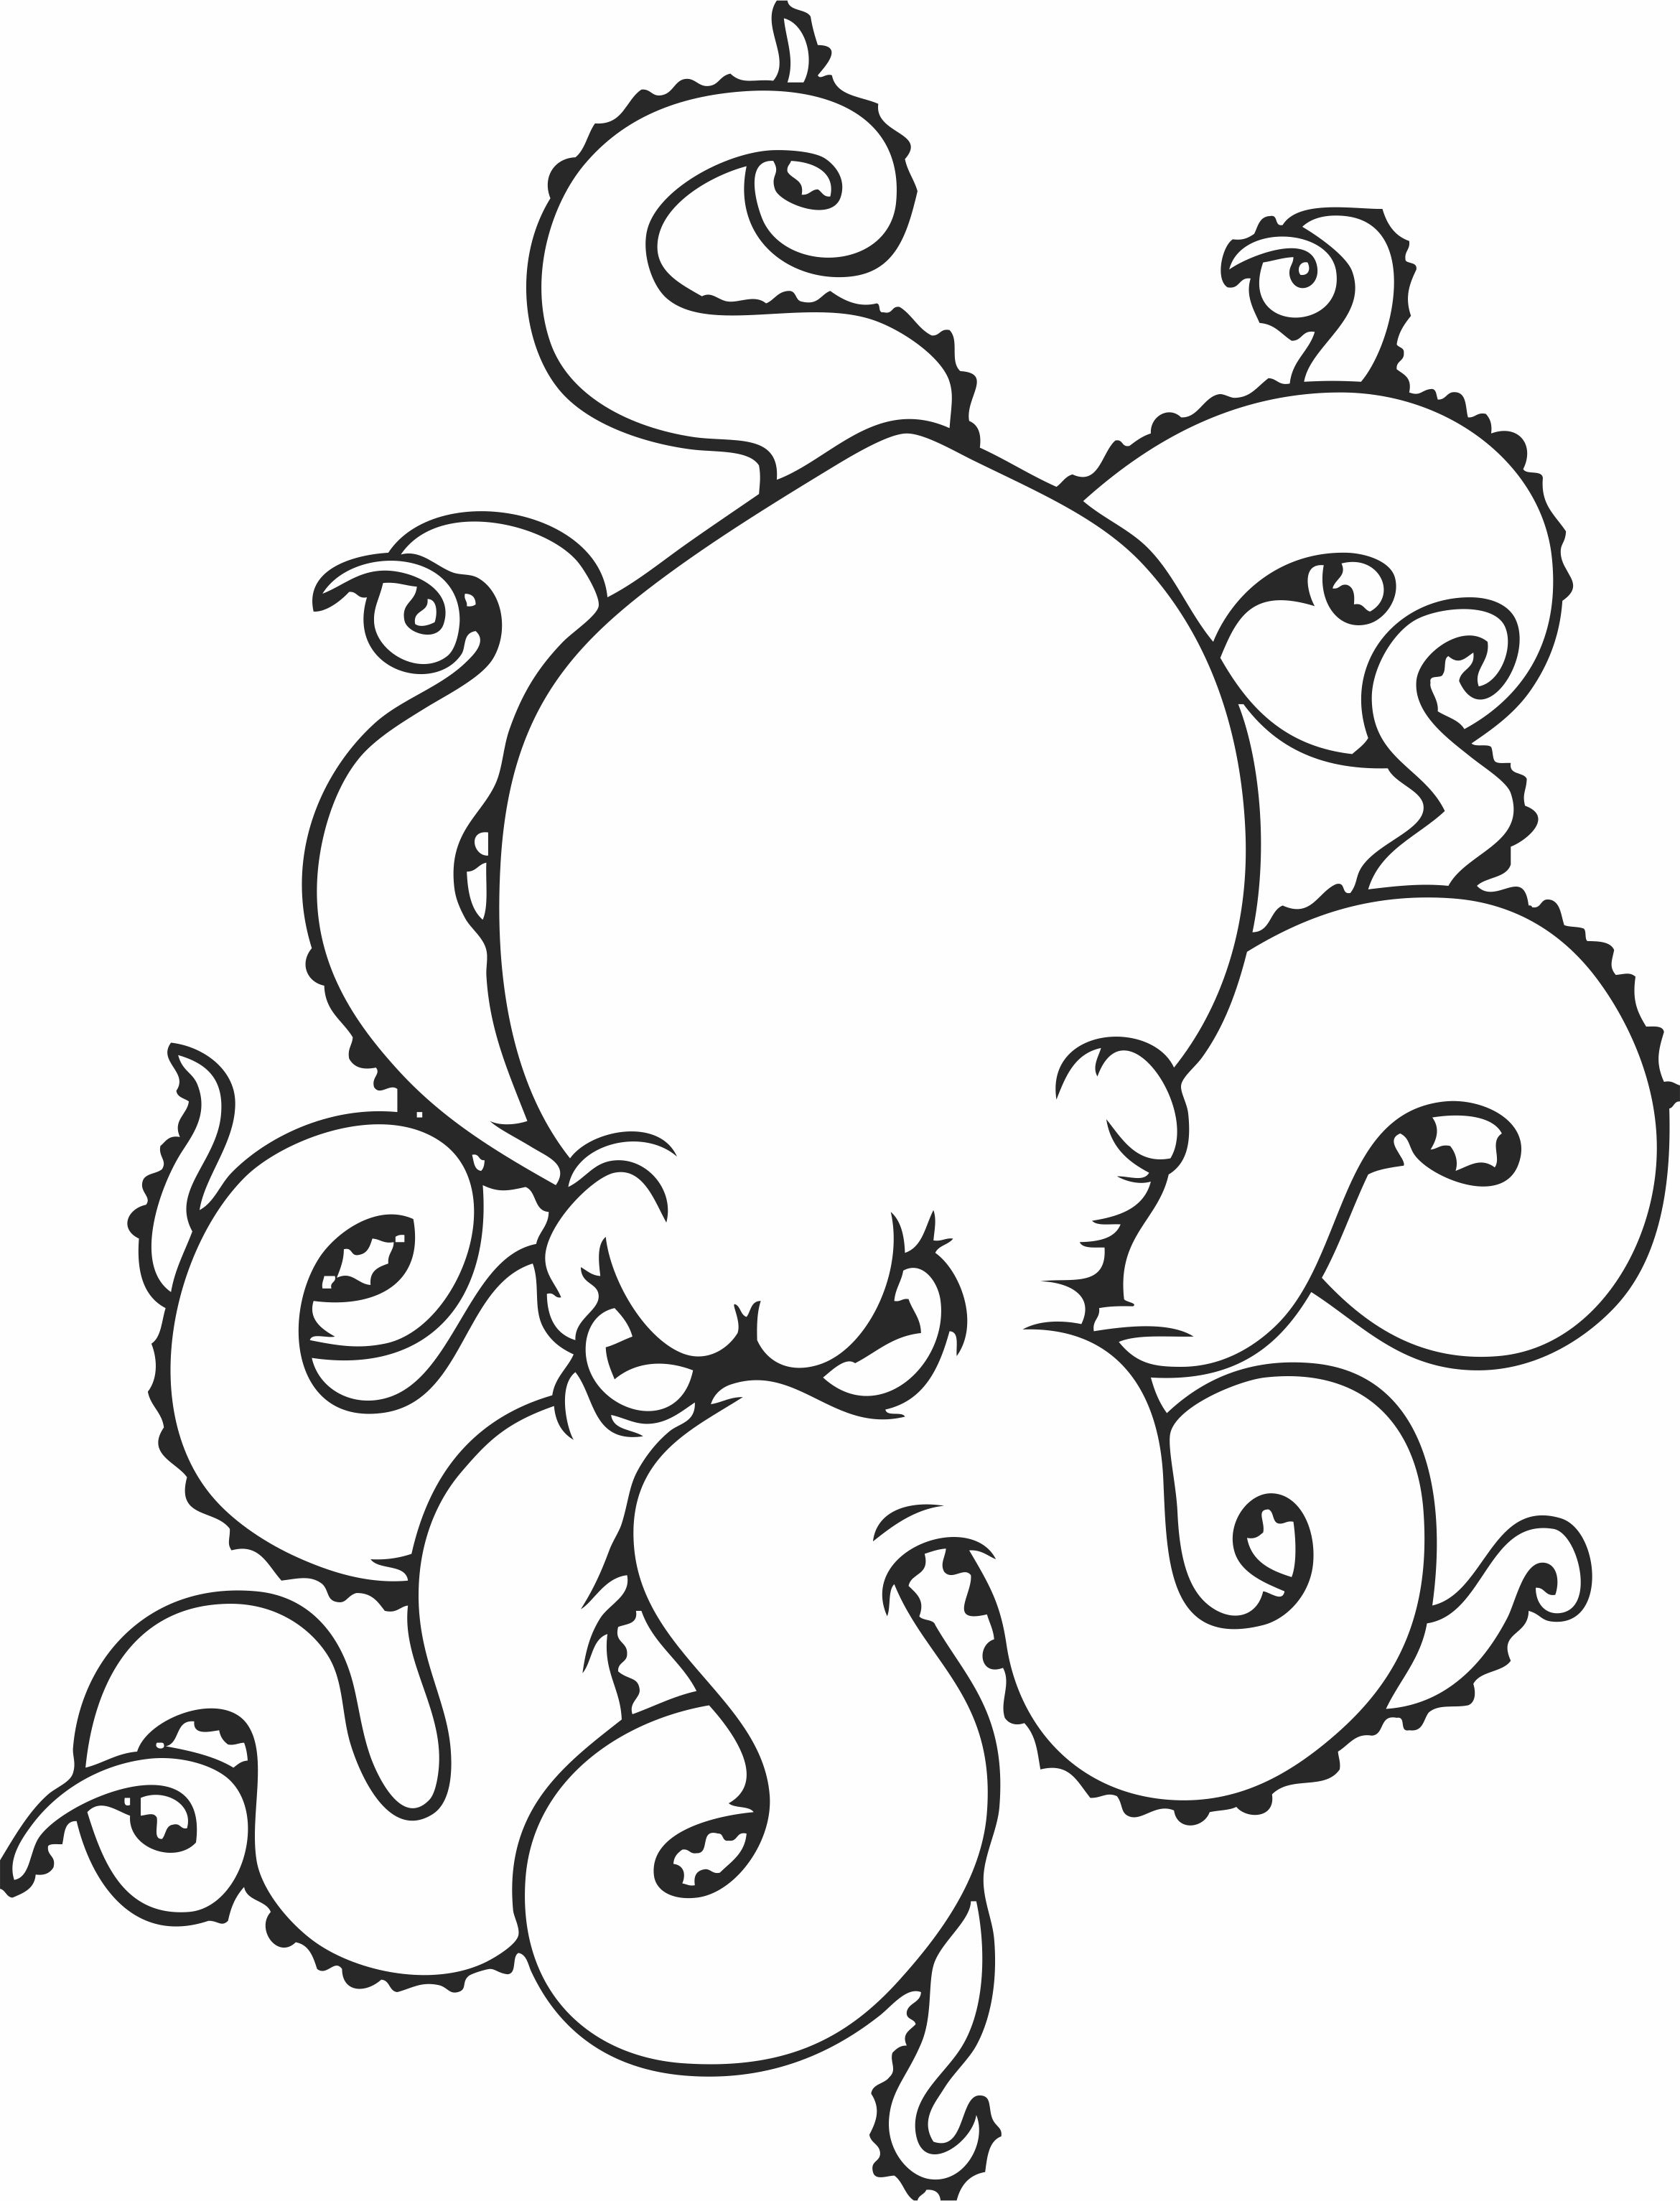 Octopus drawing clipart - fichier DXF SVG CDR coupe, prêt à découper ...